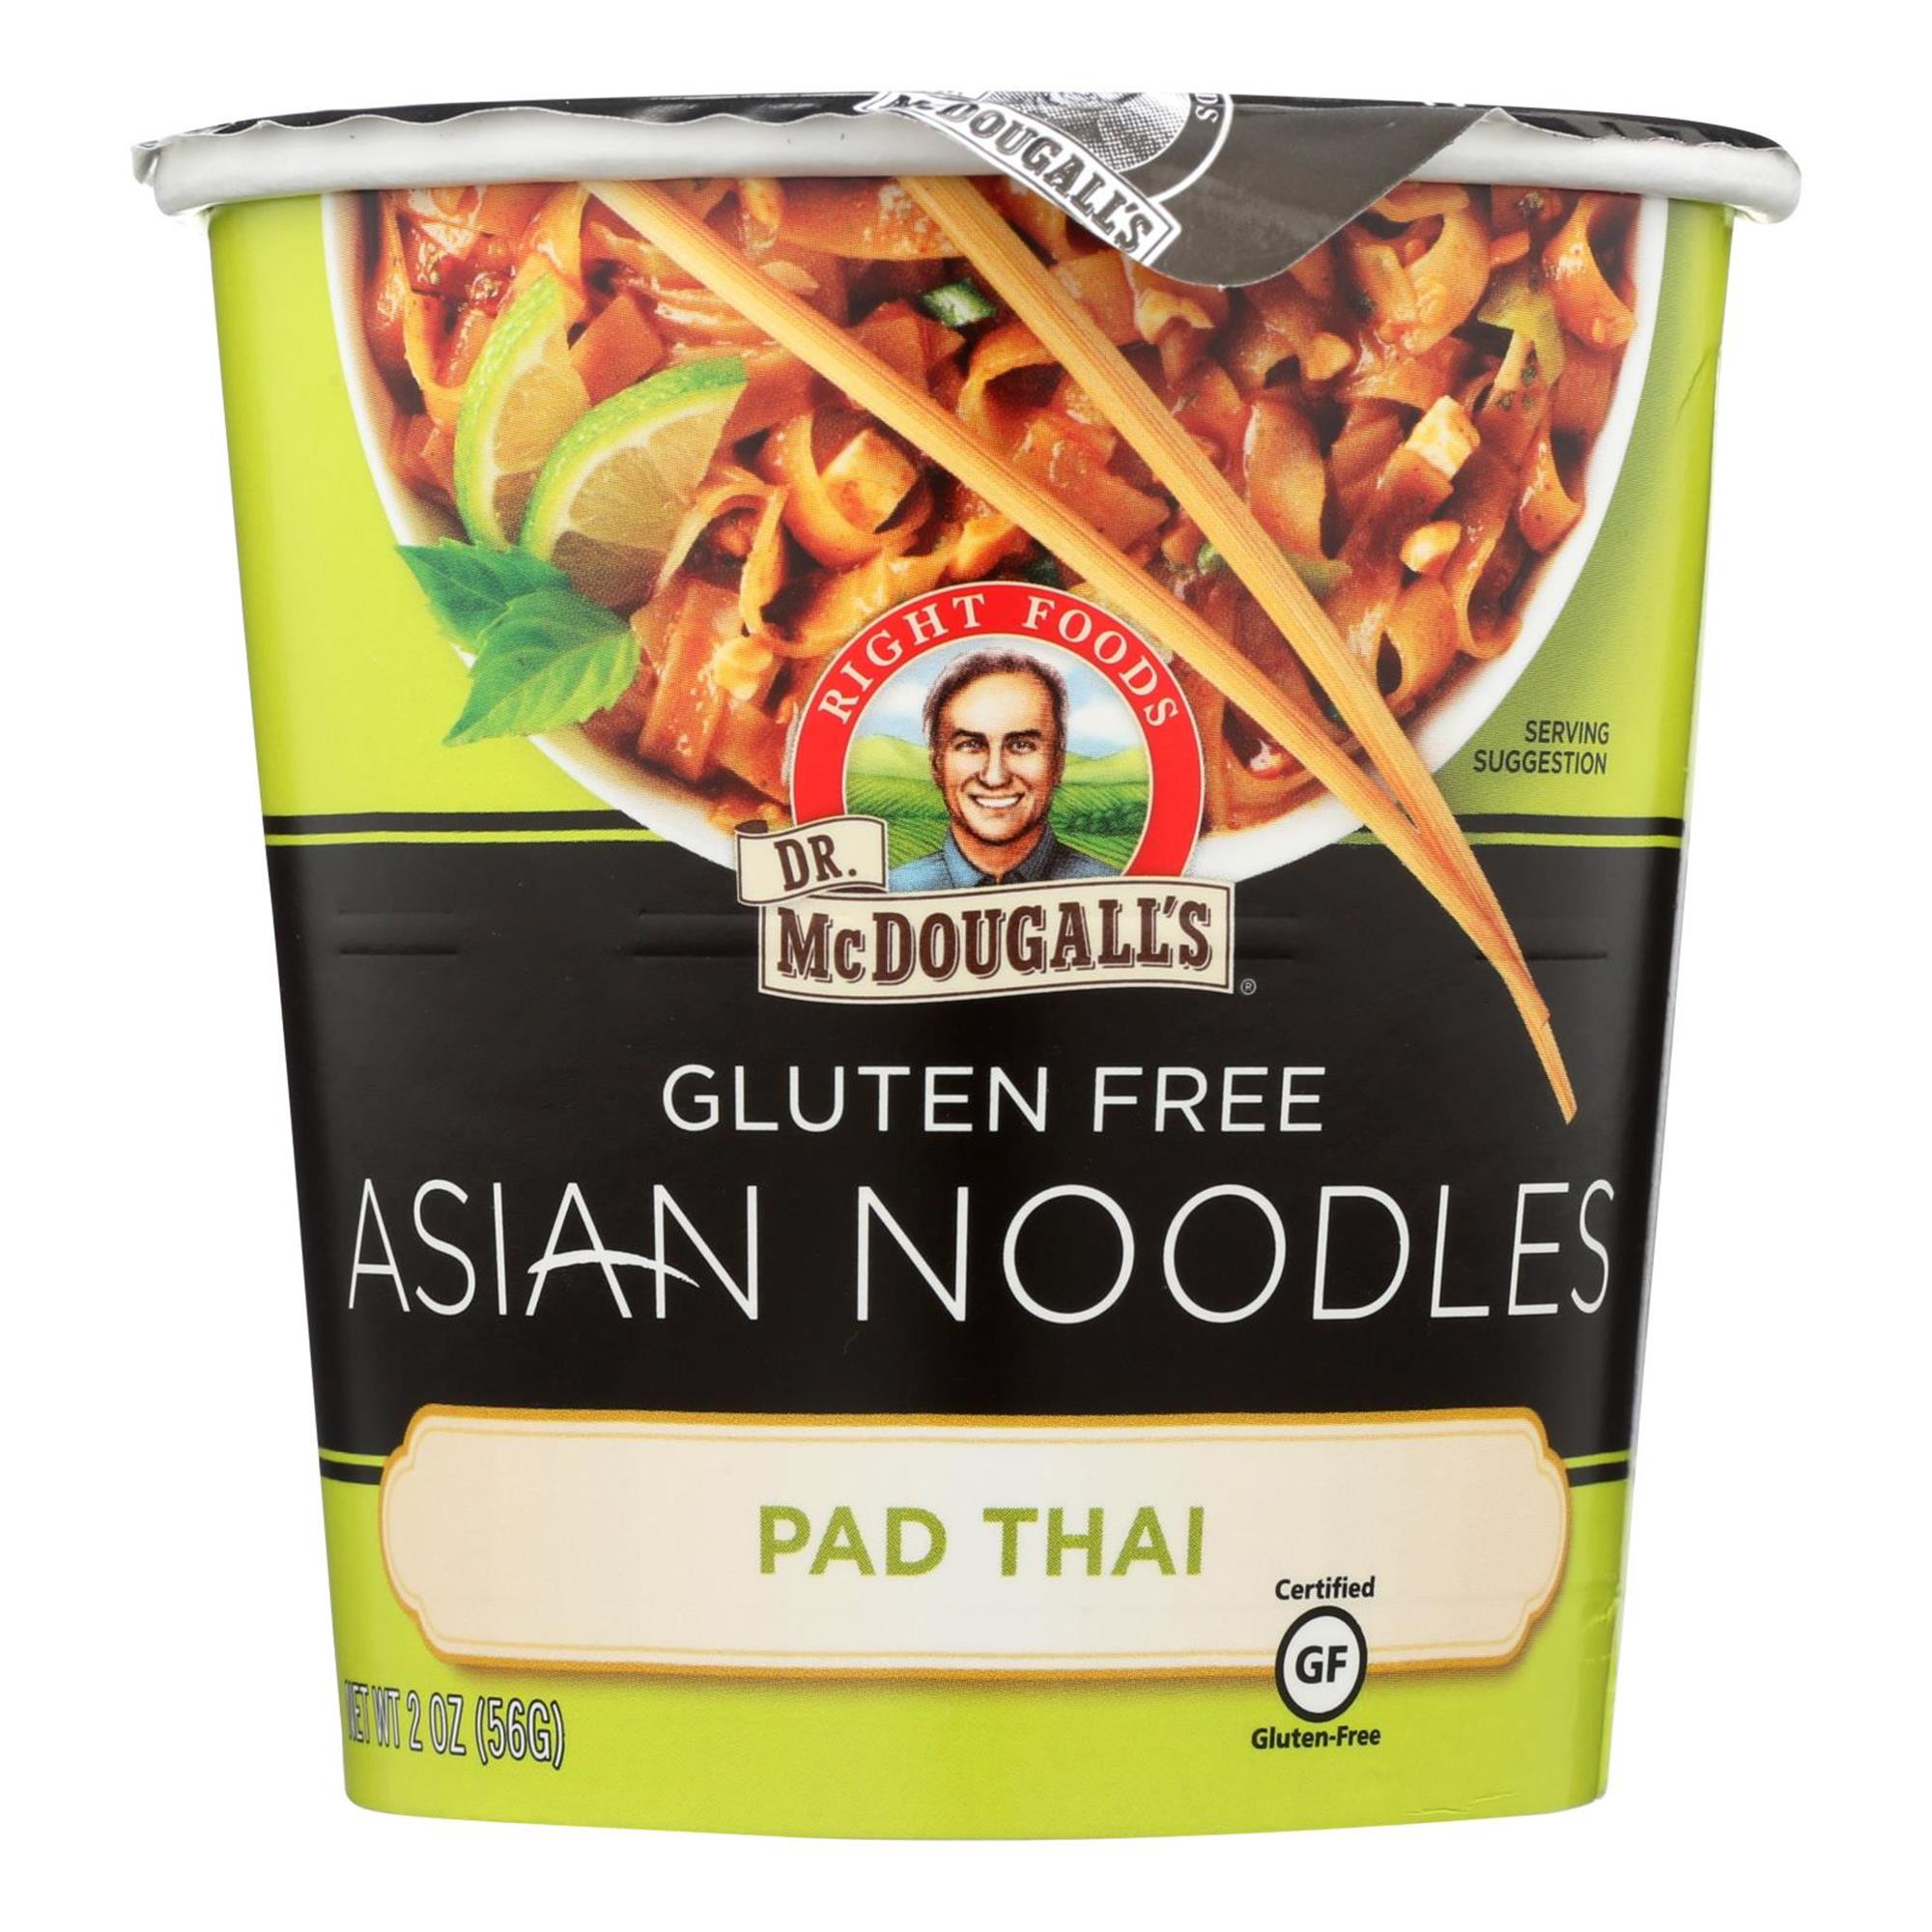 Asian Noodles Walmart
 Dr Mcdougall’S Asian Noodle Soup 2 Oz Walmart